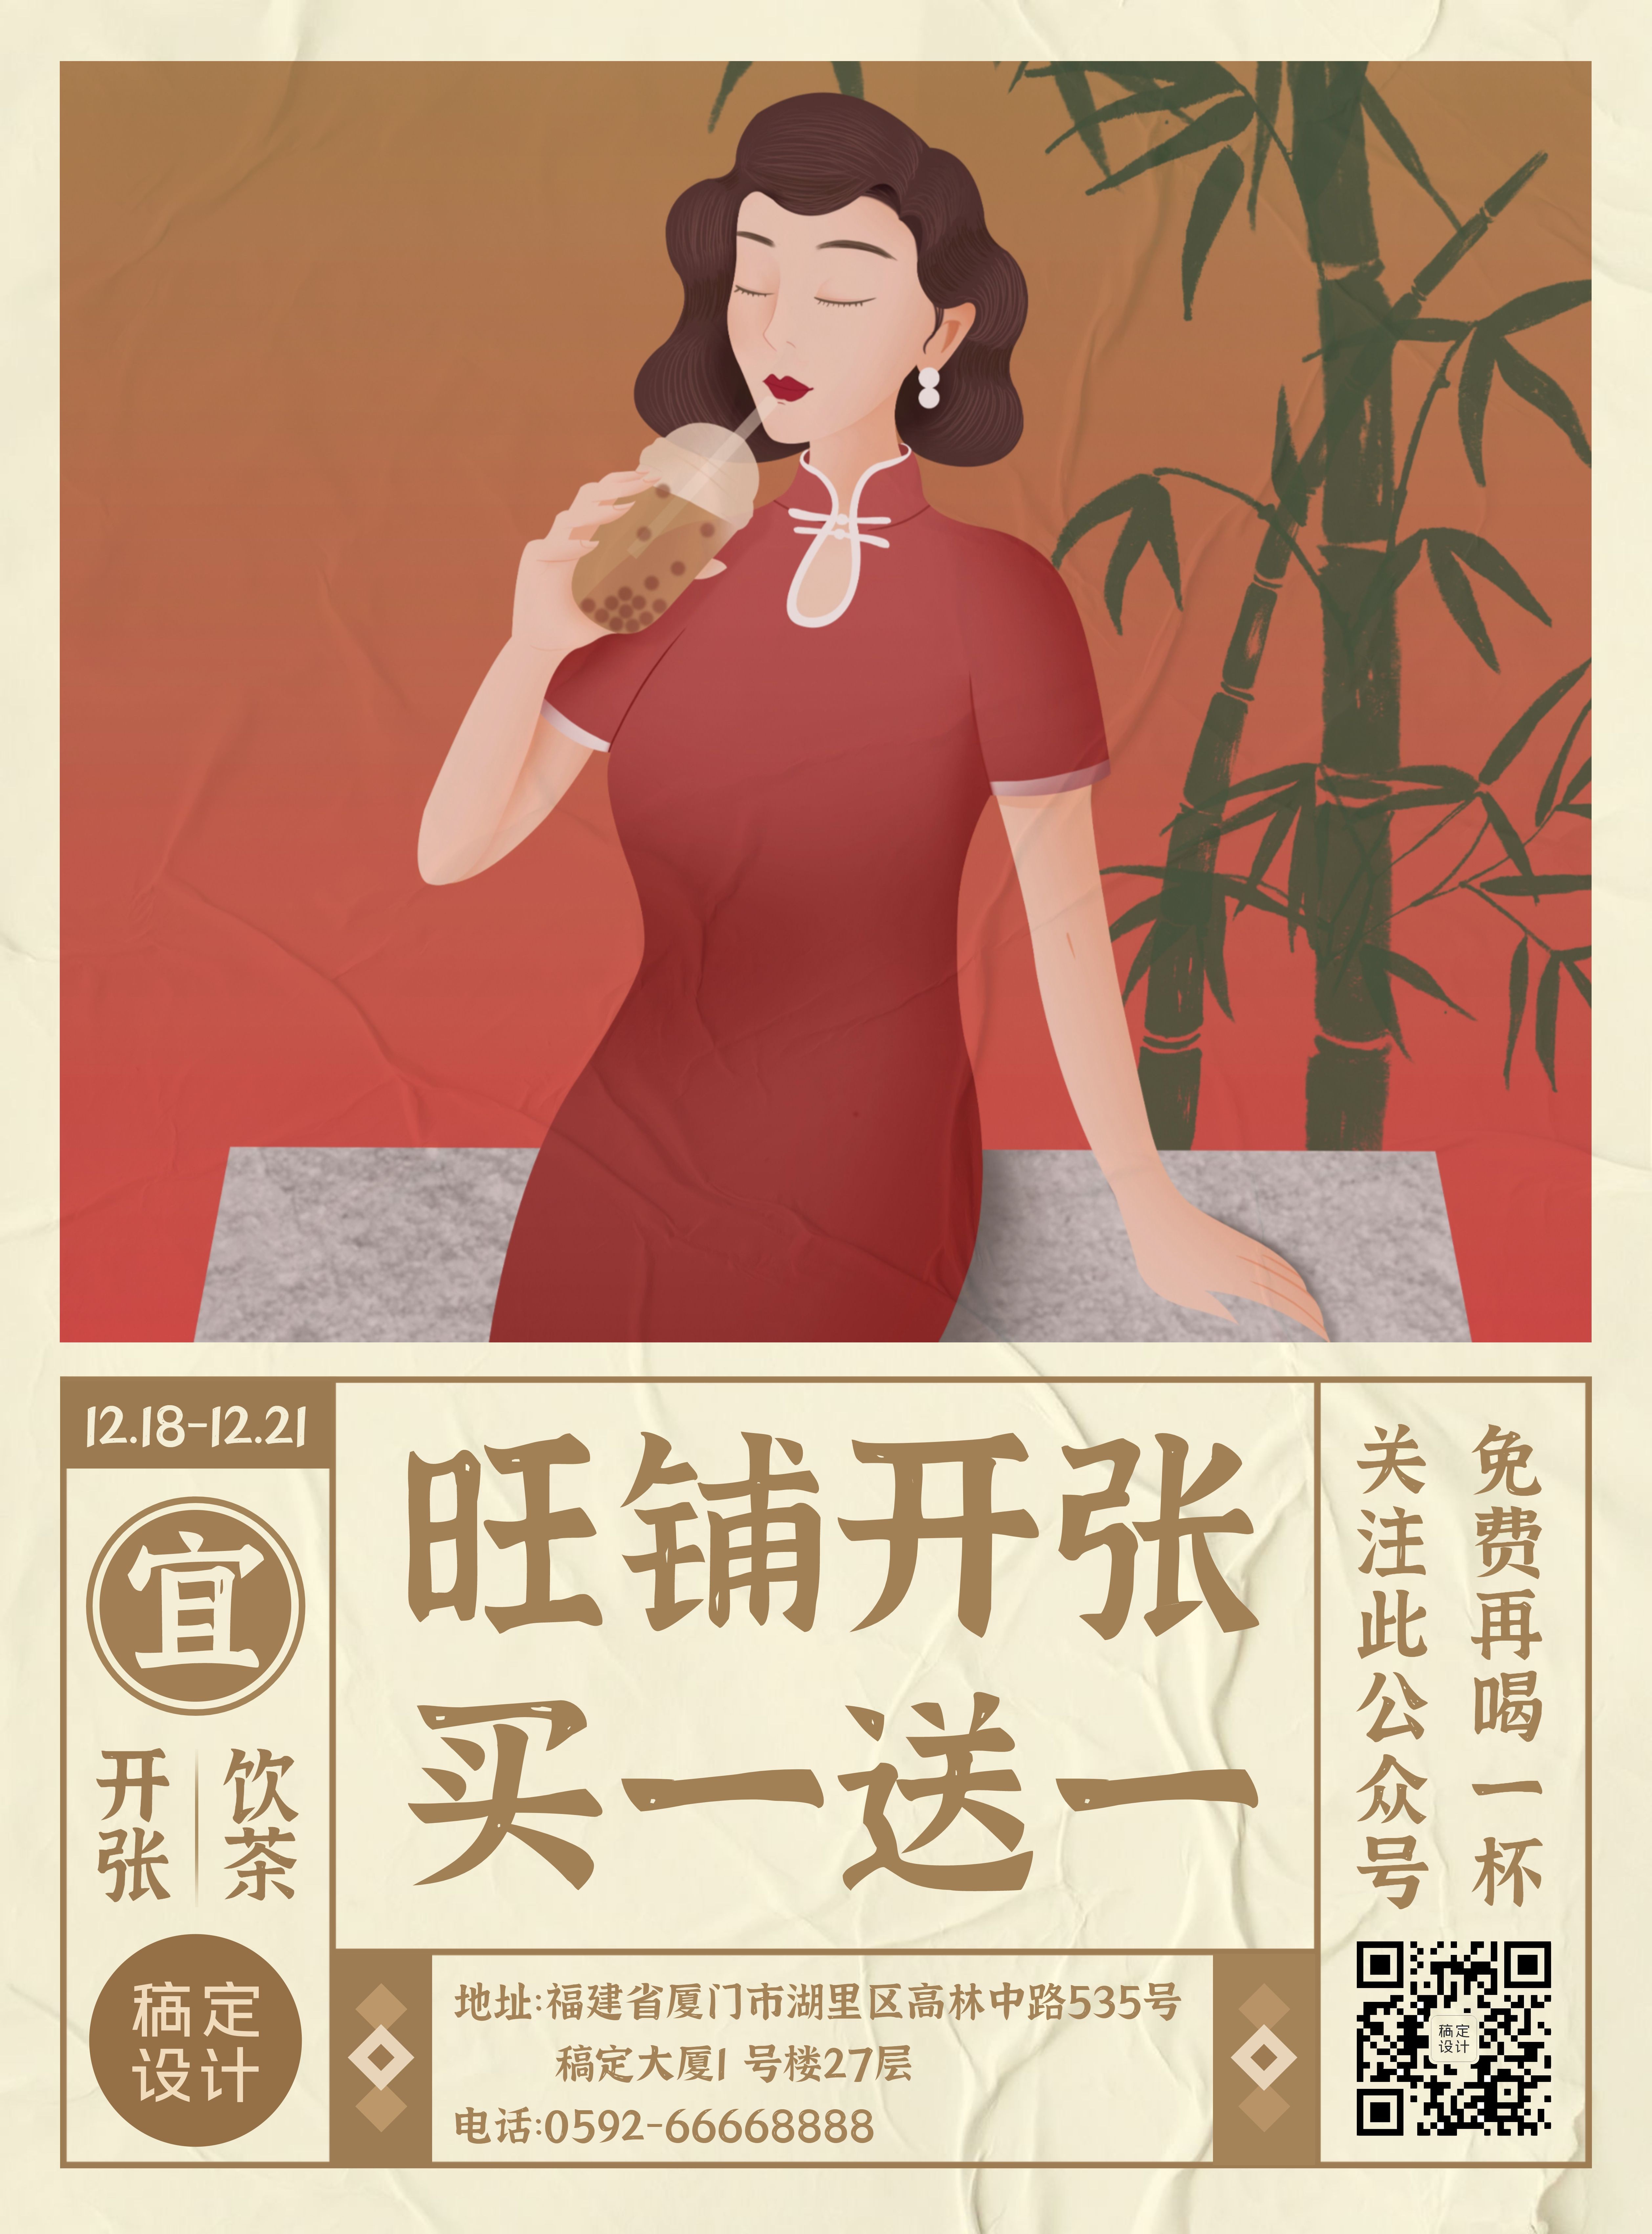 茶饮奶茶开业活动印刷海报